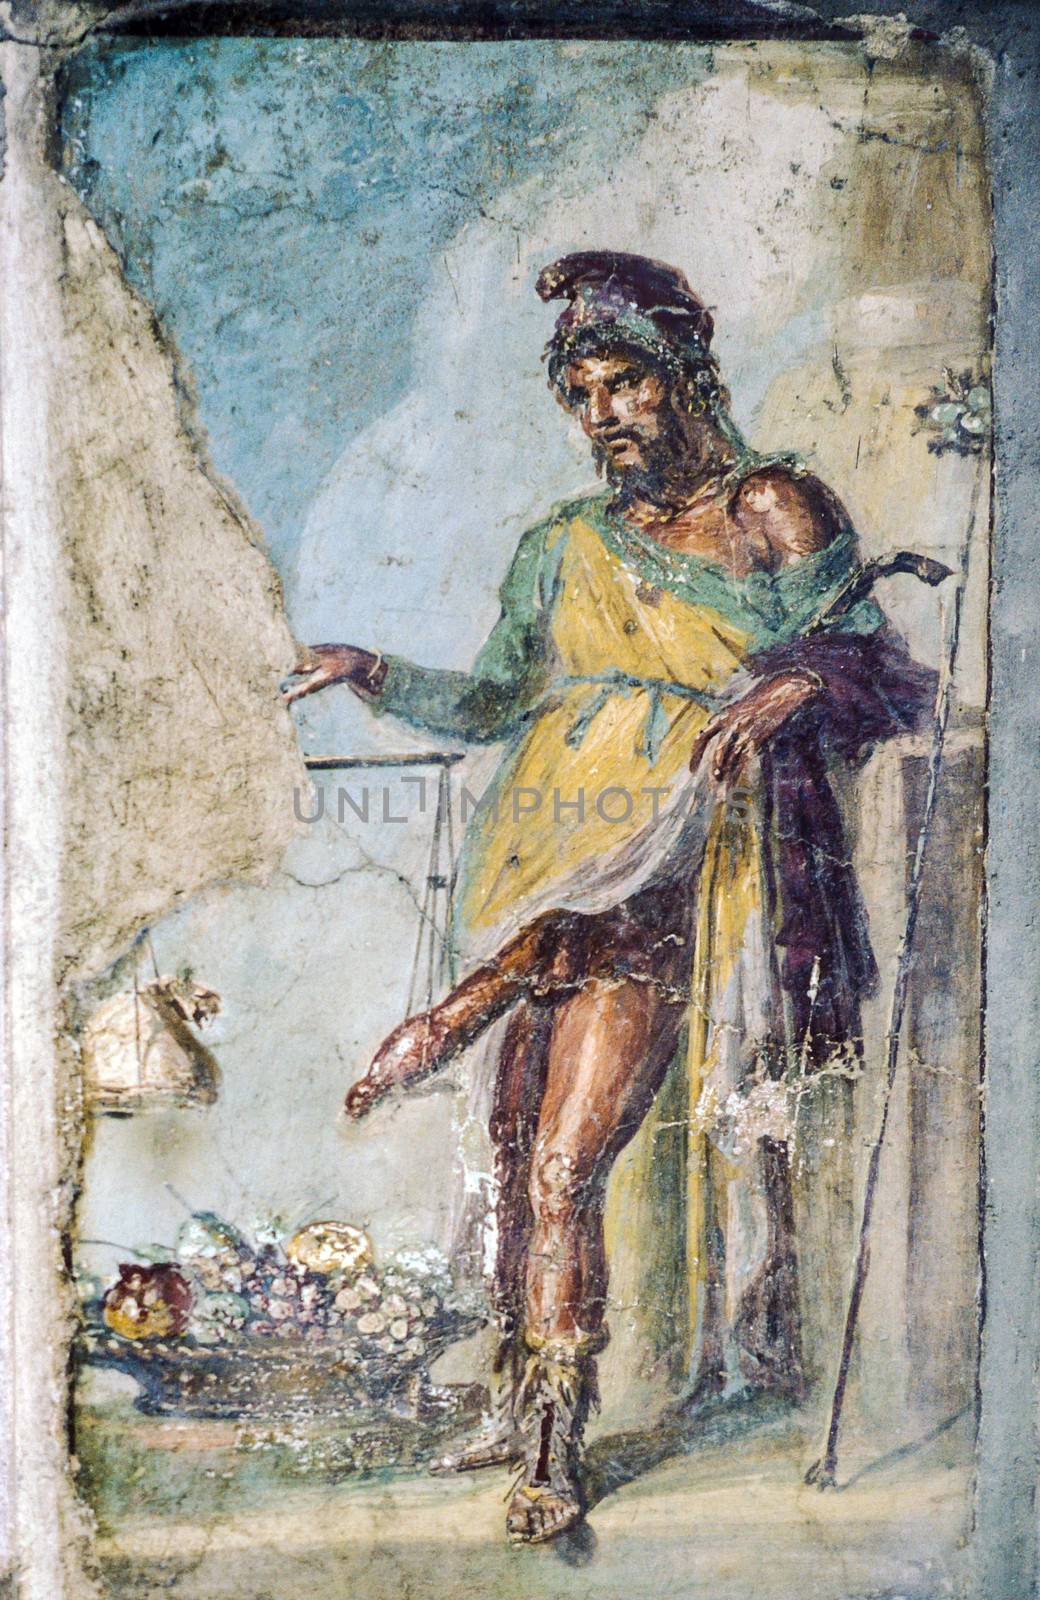 POMPEII, ITALY - NOVEMBER 30: Ancient roman fresco of the roman god of fertility and lust Priapus on Nov 30, 1996 in Pompeii, Italy.